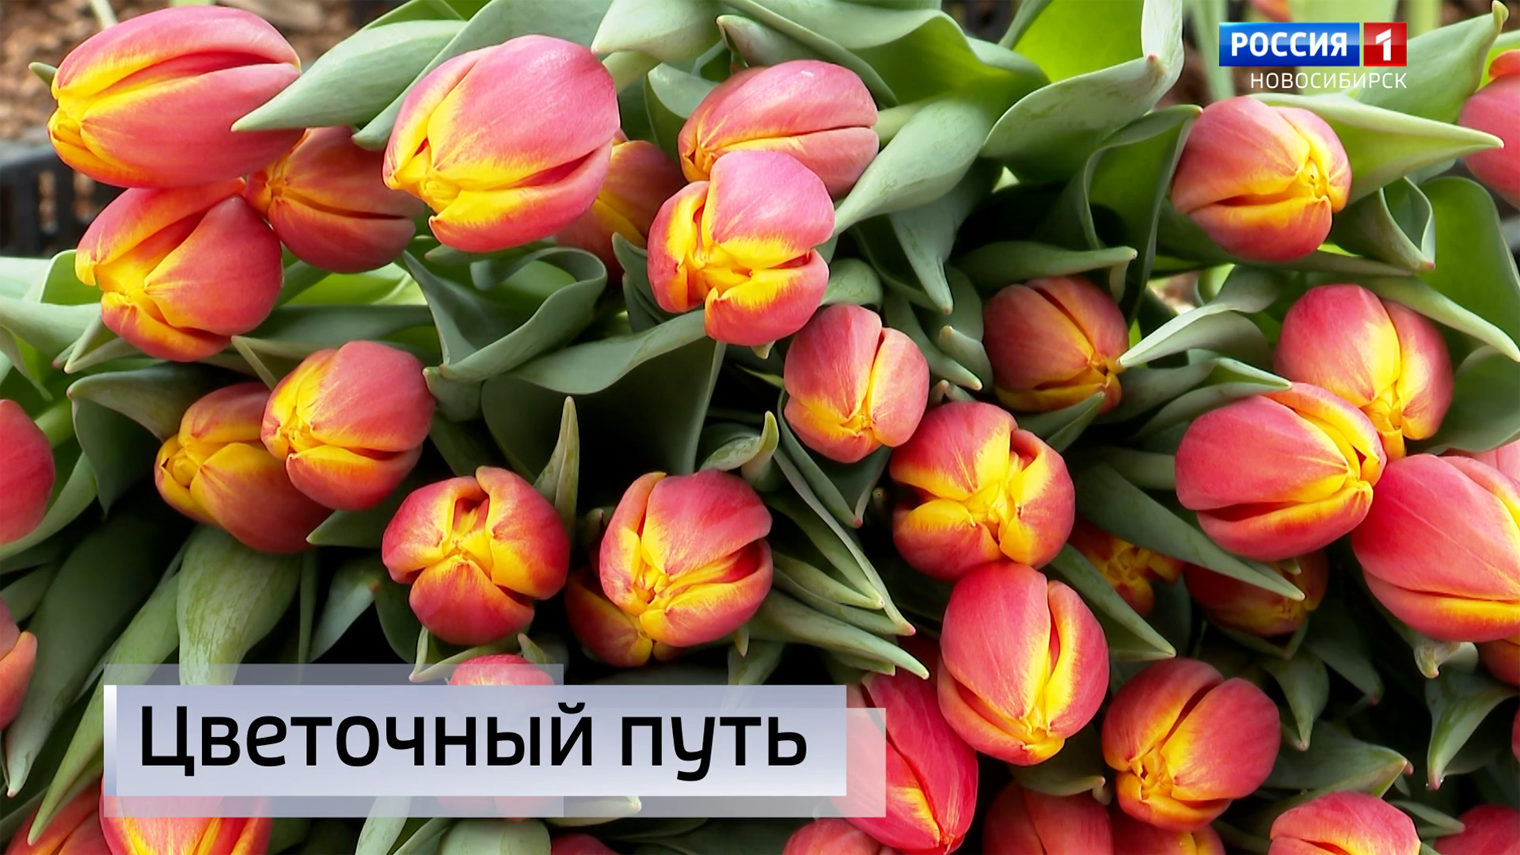 Дефицит цветов может возникнуть к 8 марта в Новосибирске